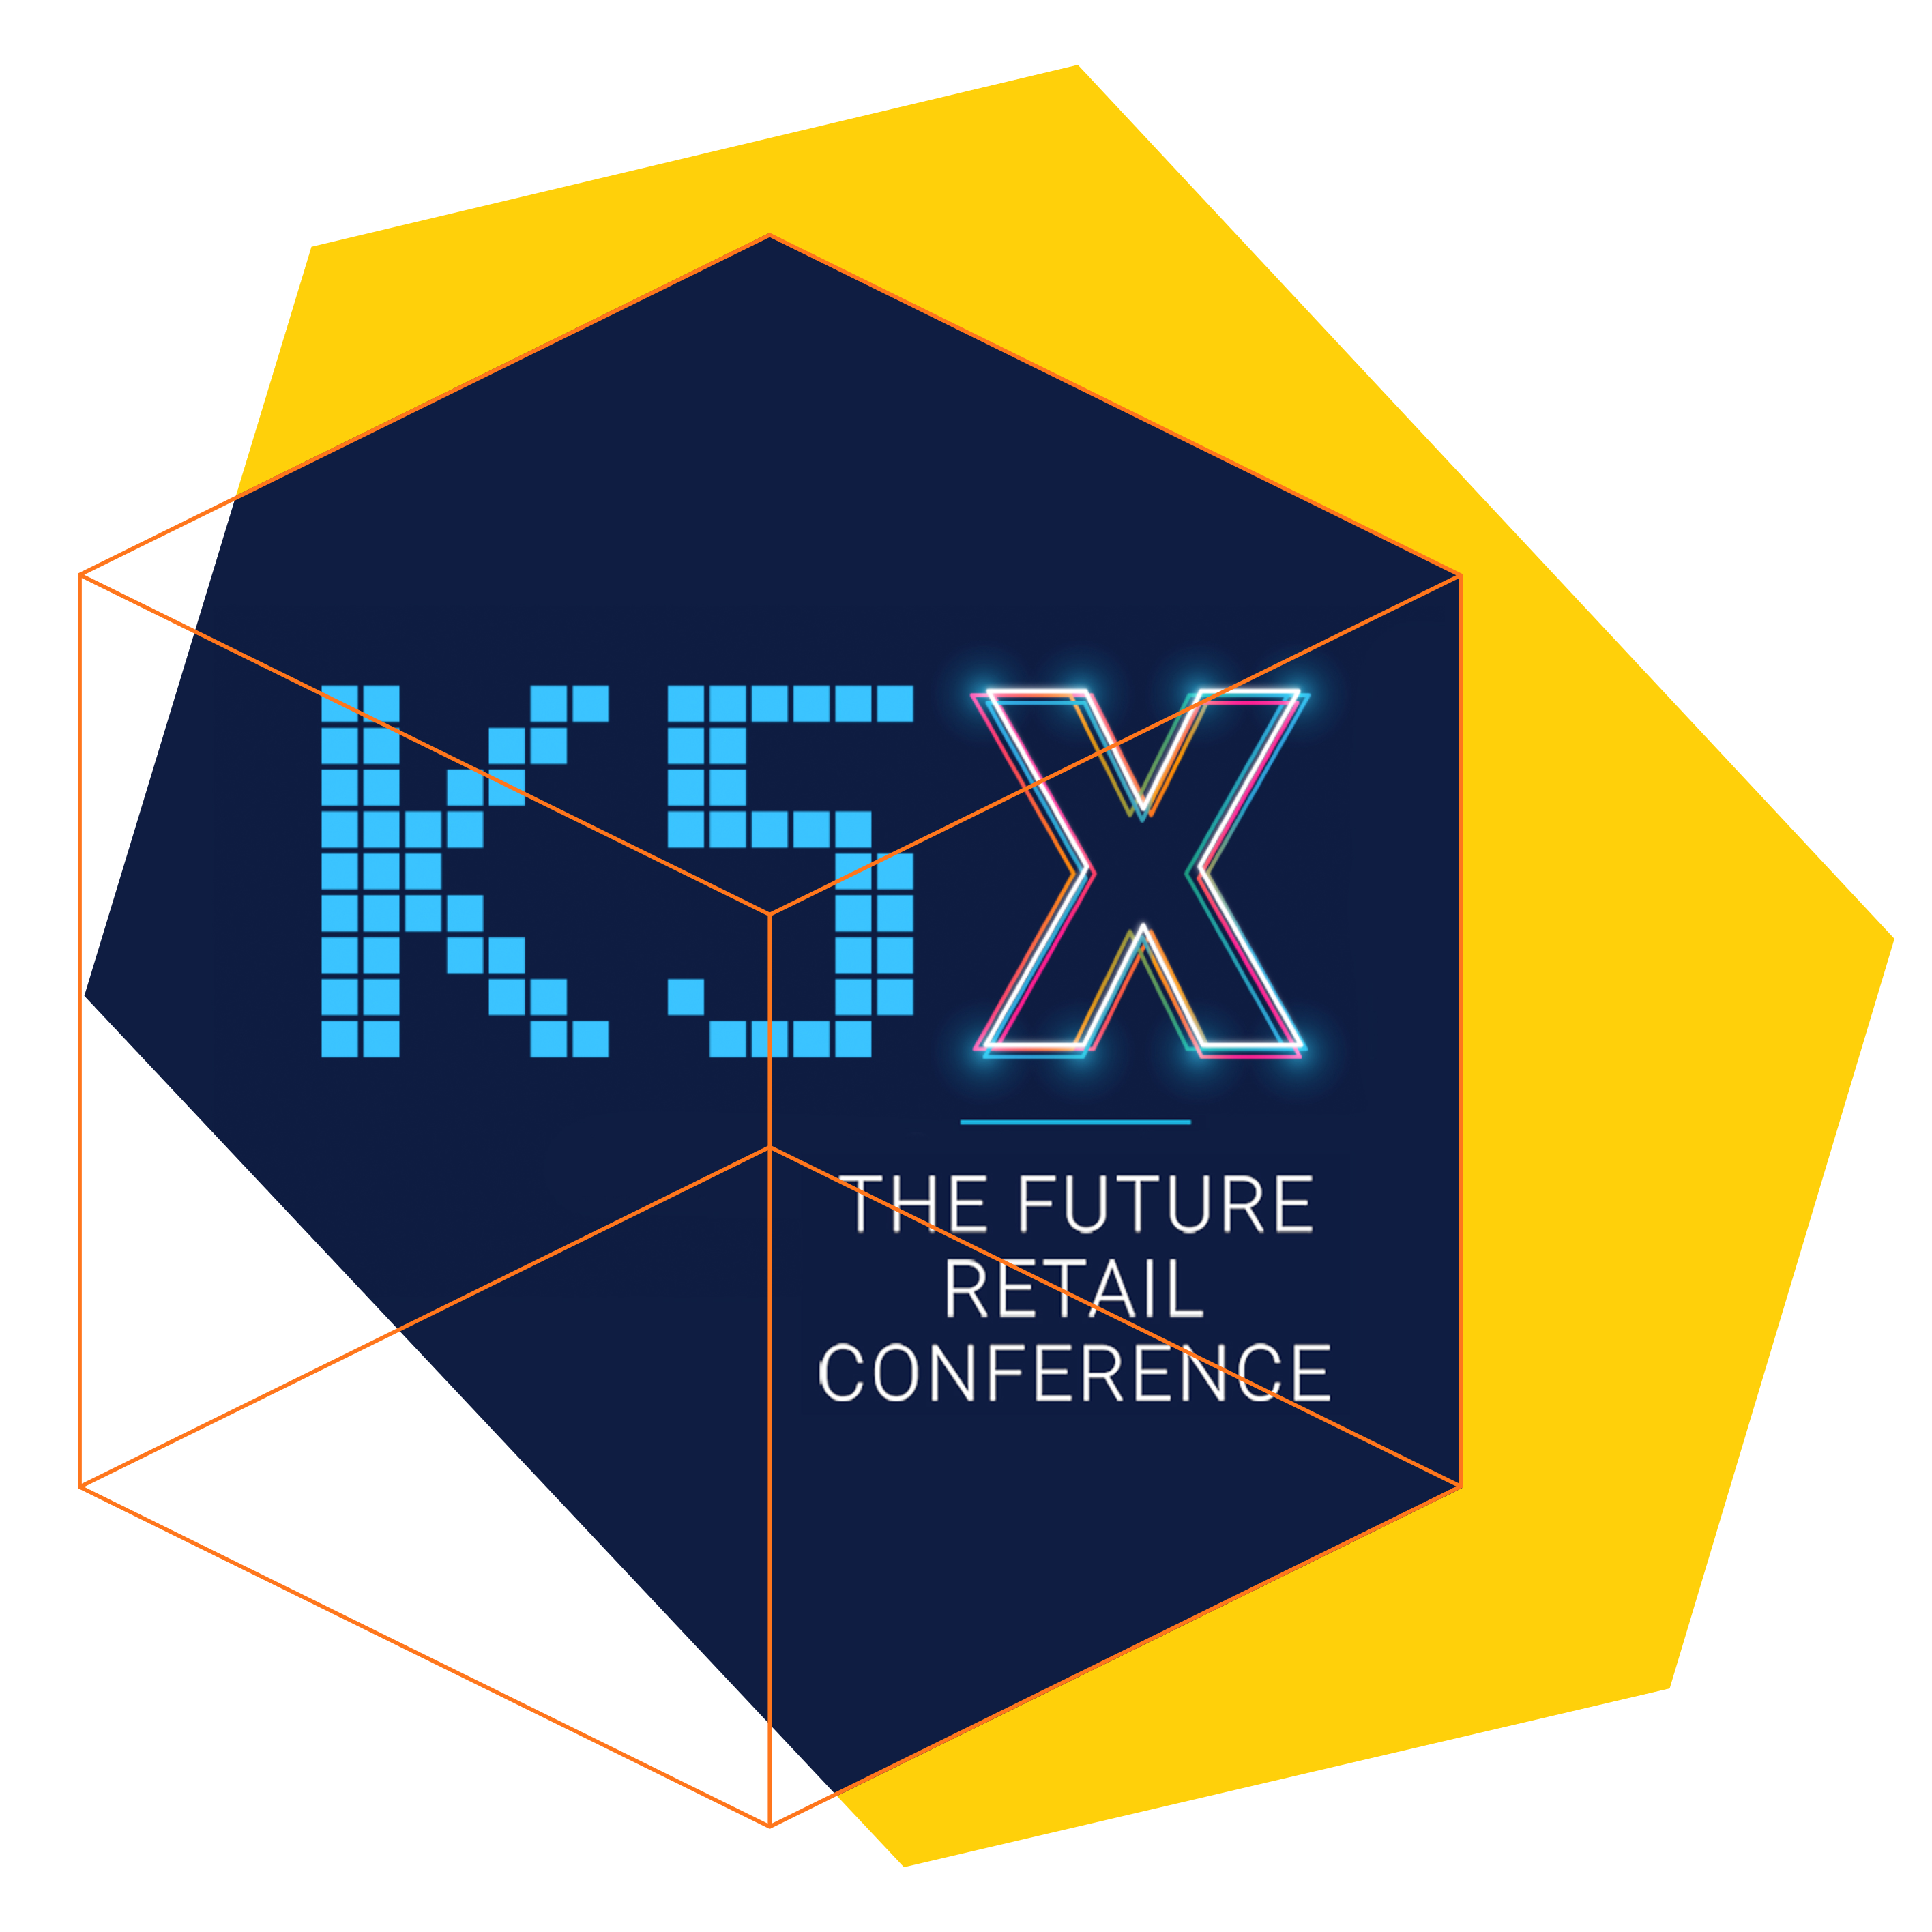 K5 conference homepage slider image